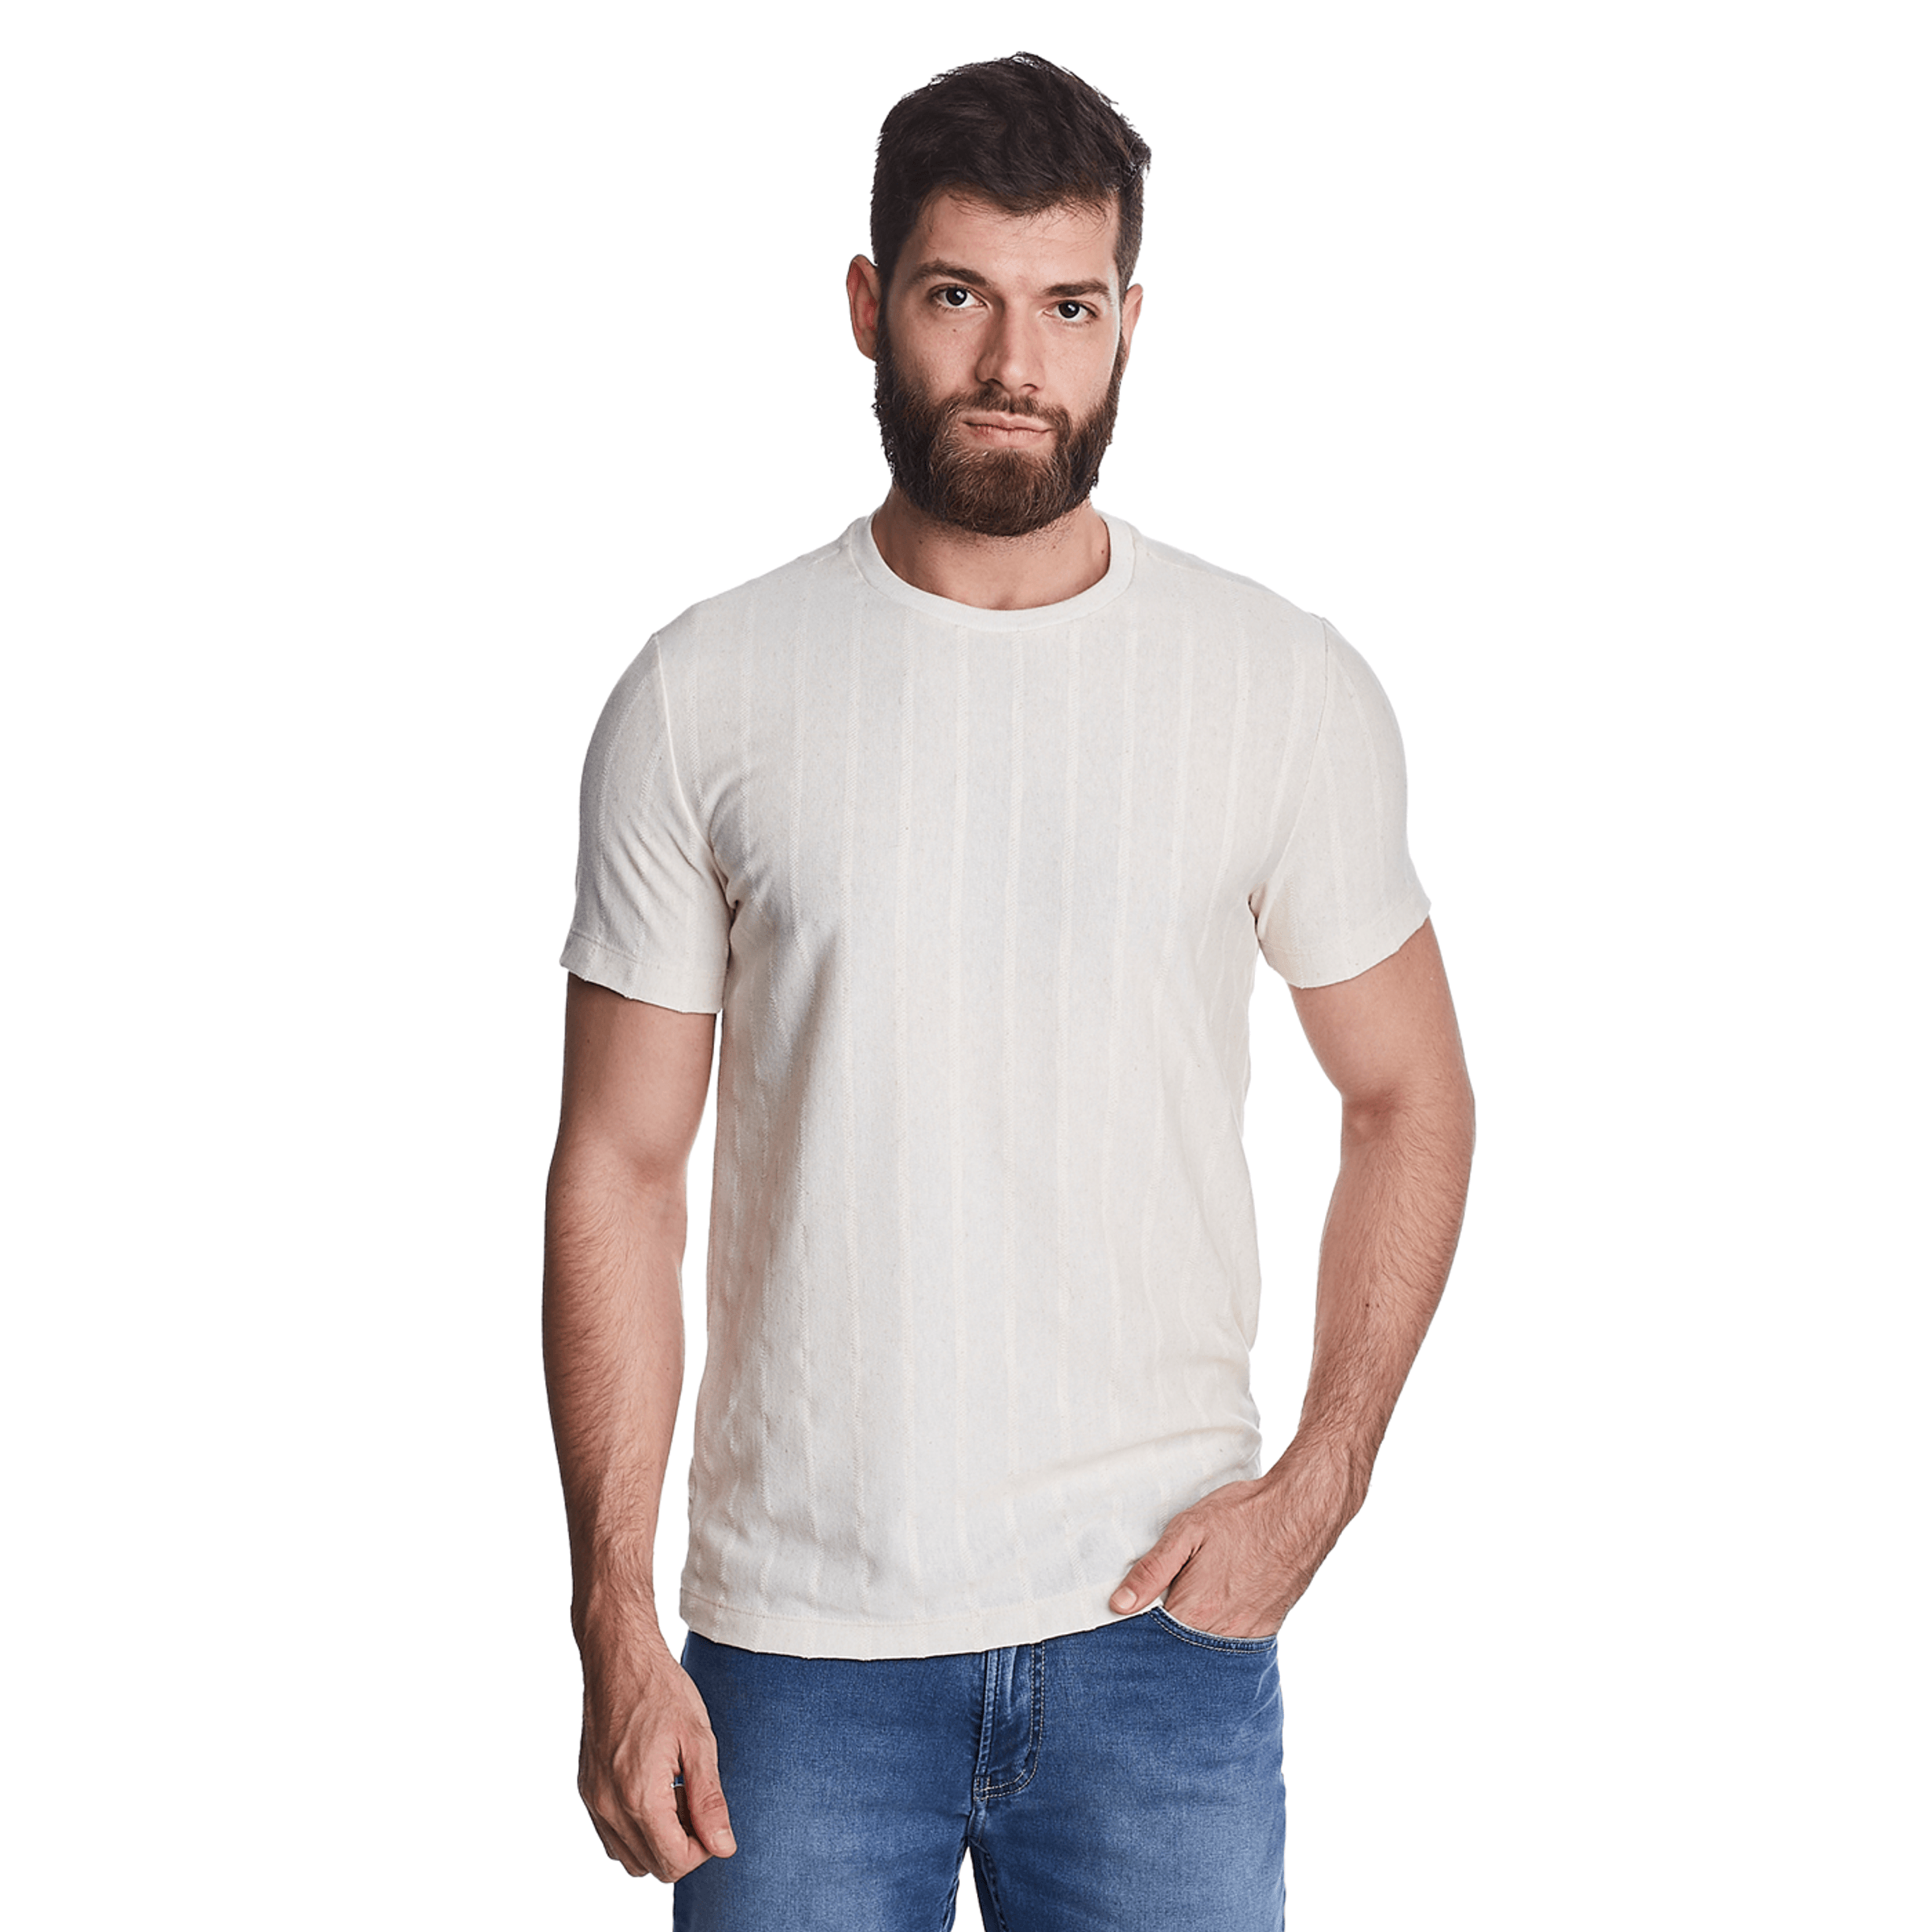 Camiseta-Slim-Masculina-Tricot-Convicto